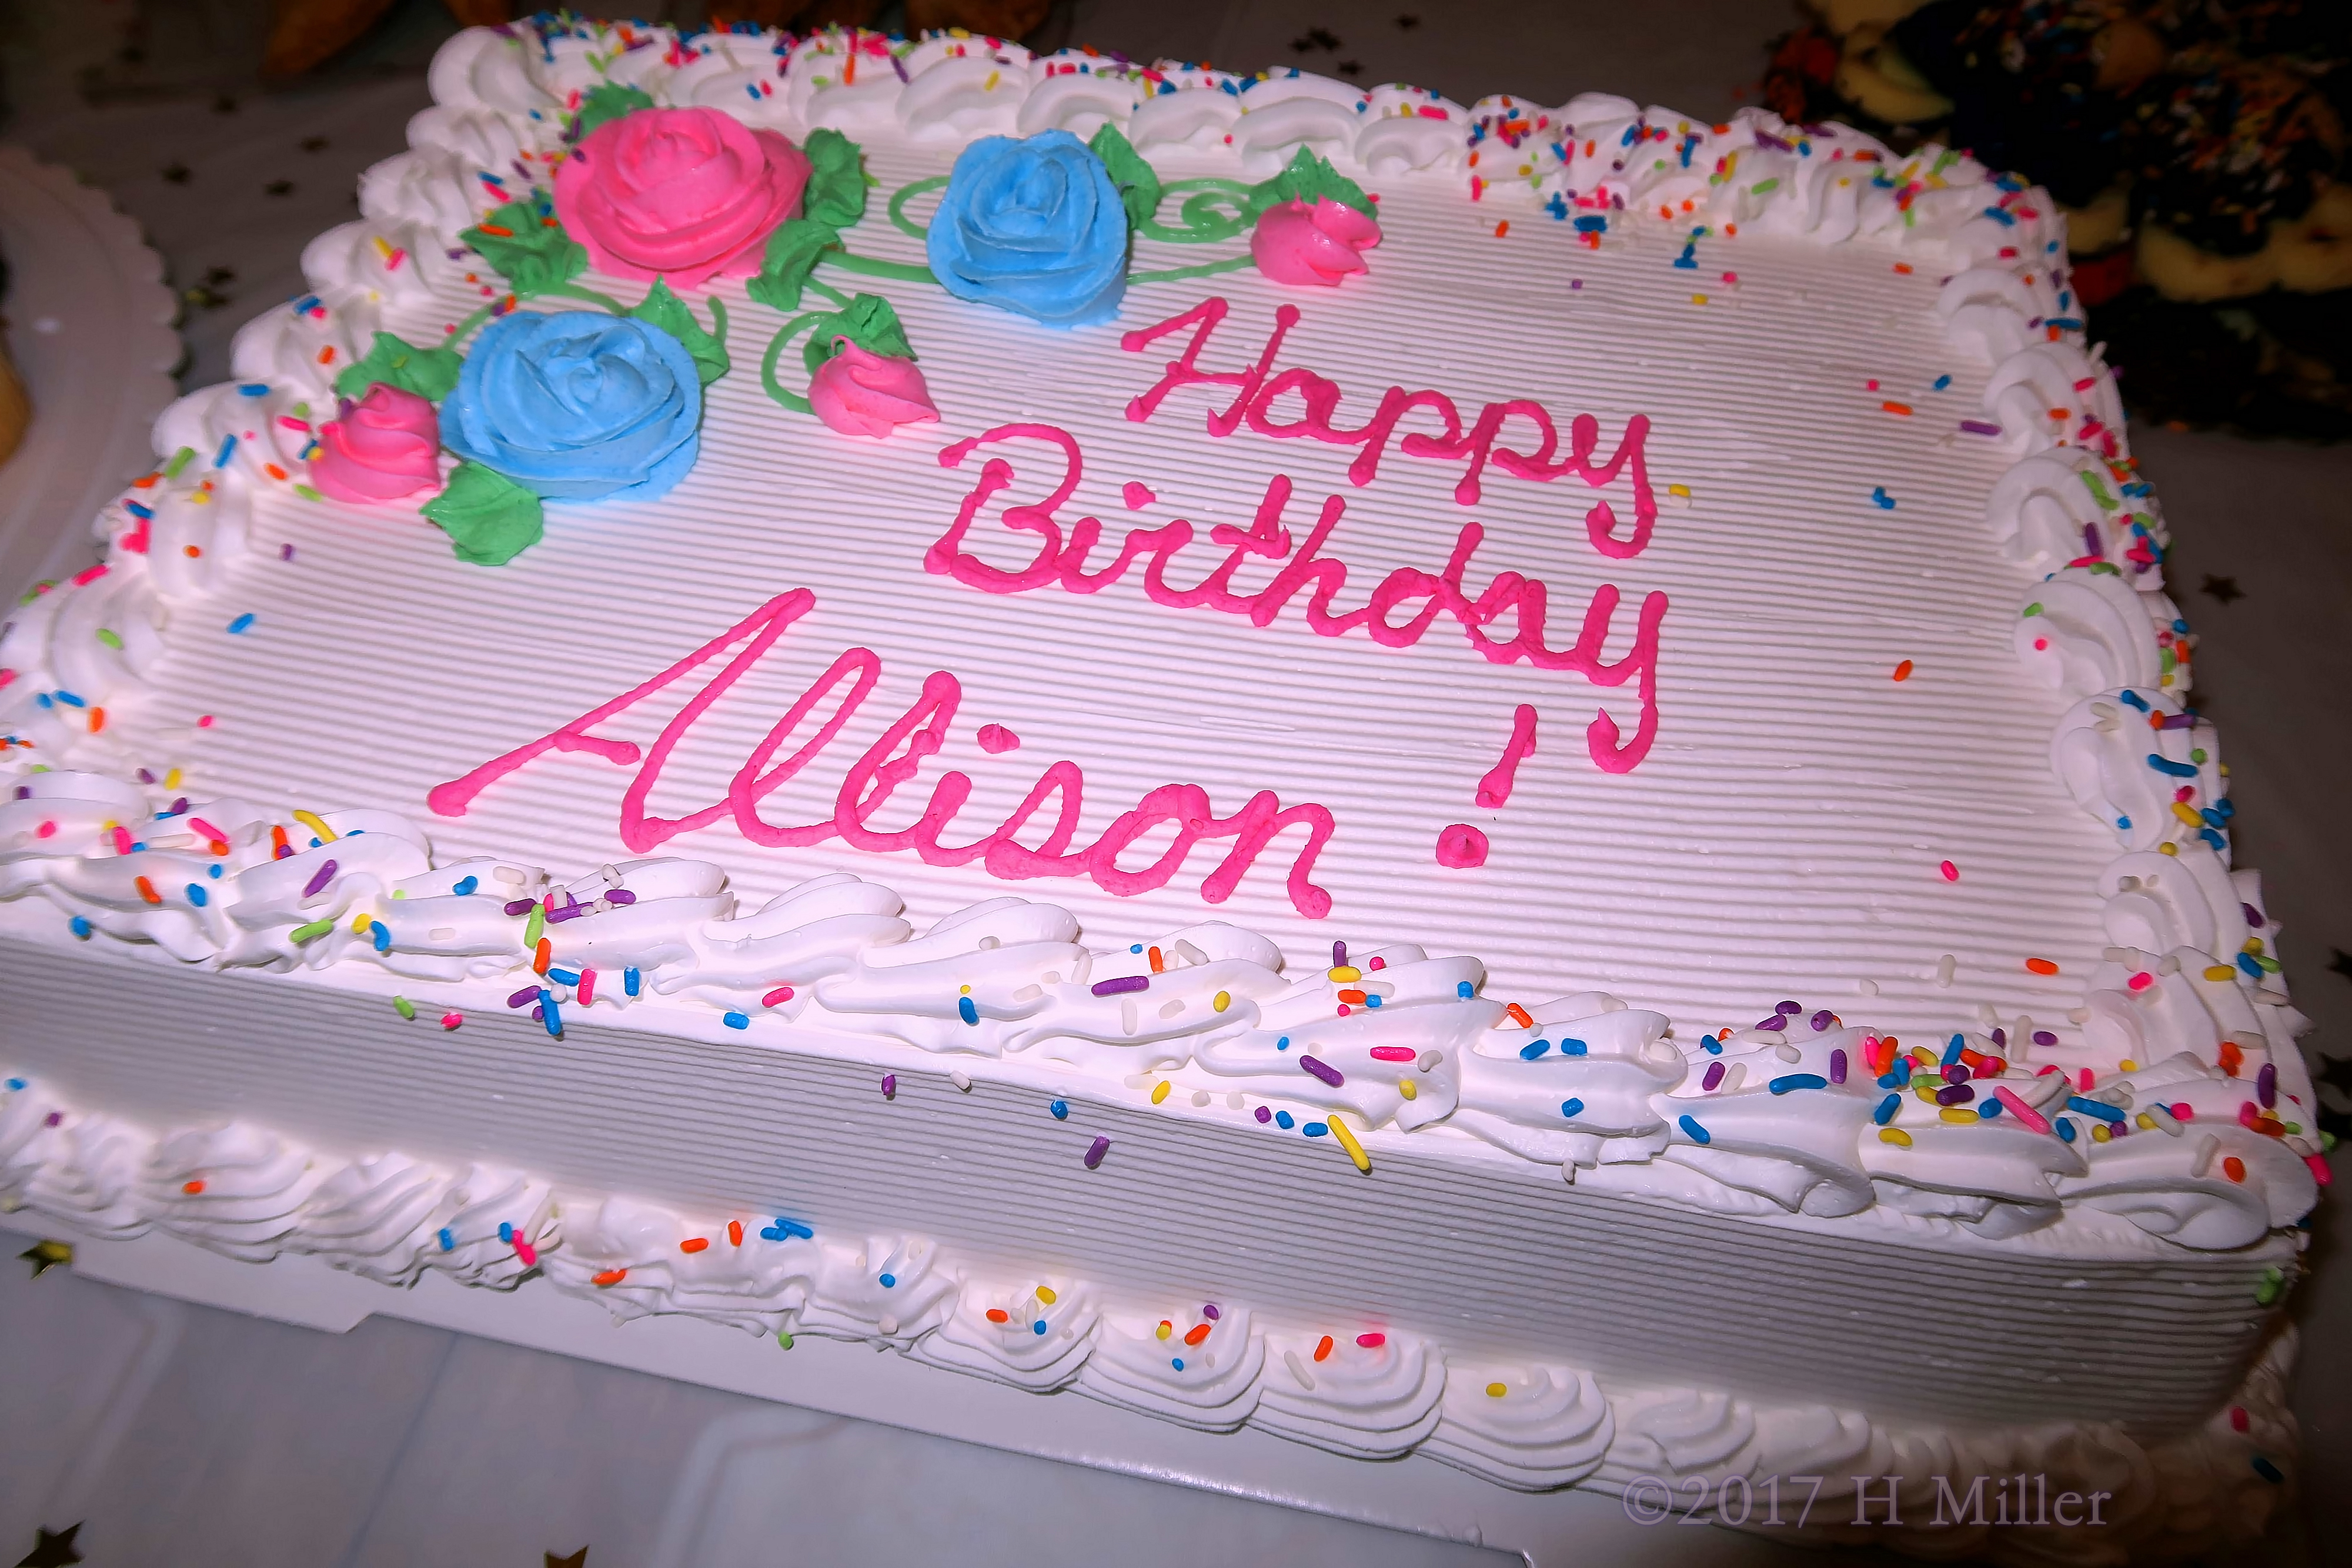 Happy Birthday Allison! 